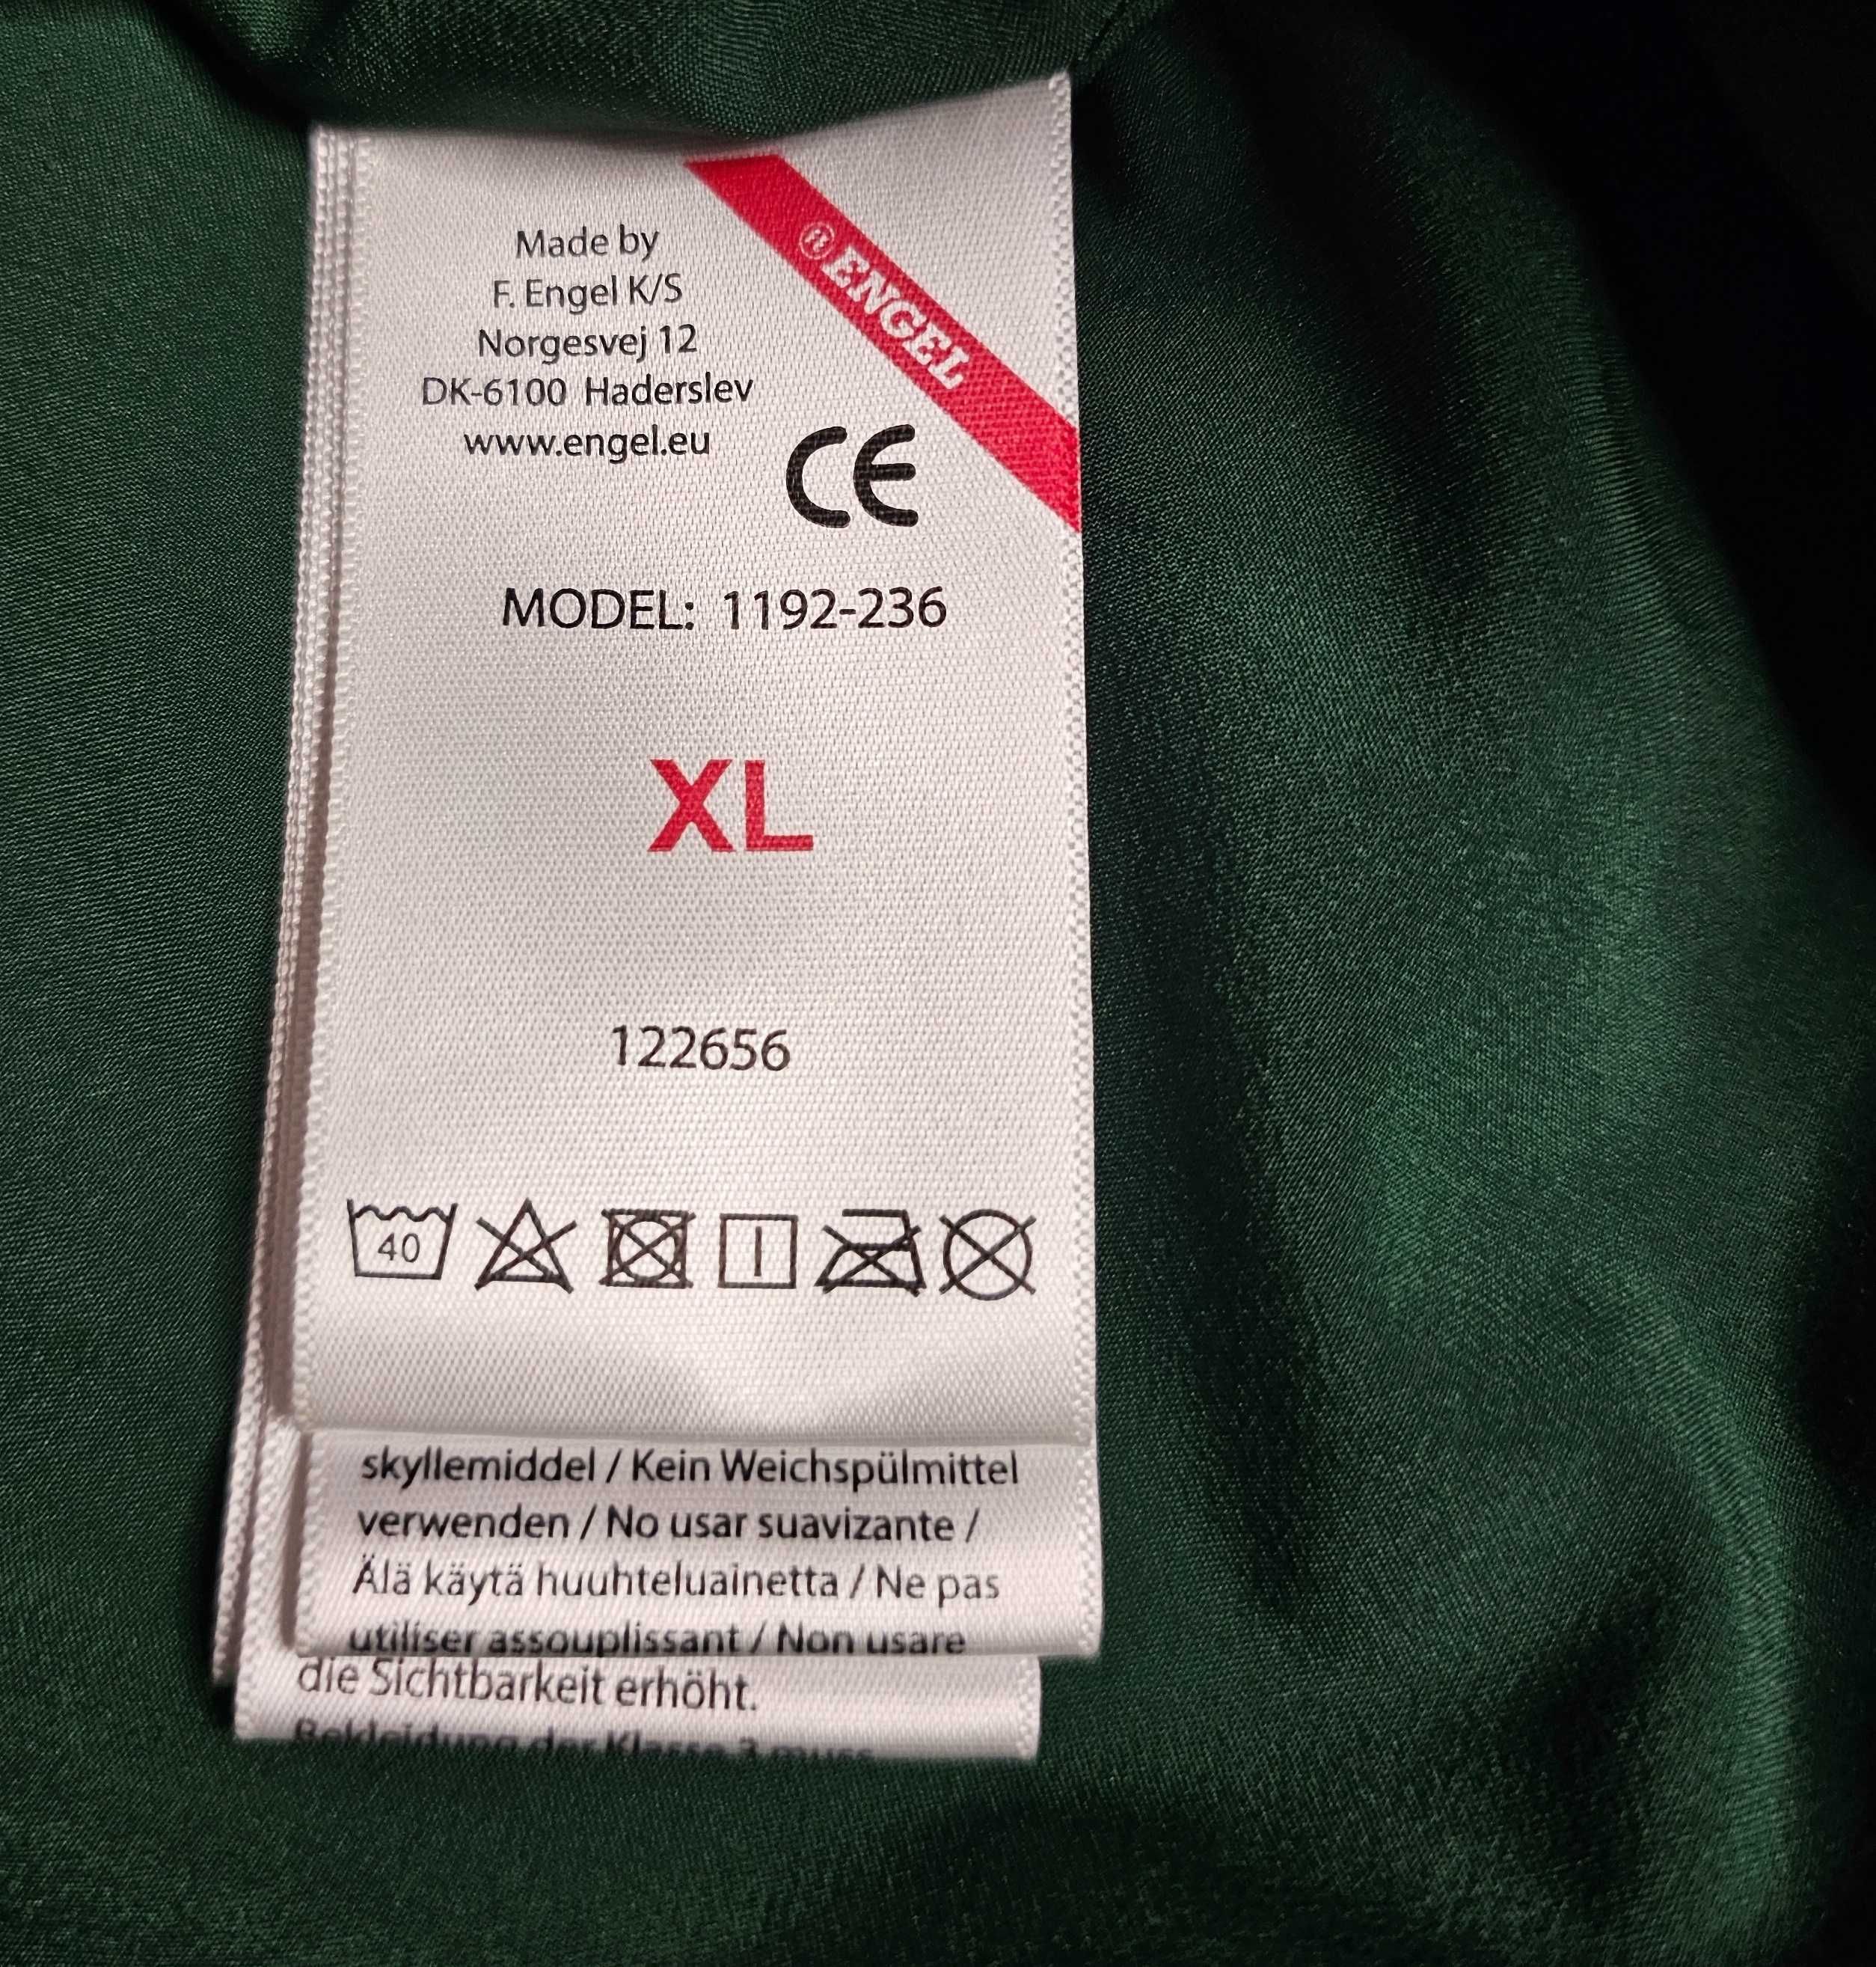 Bluza polarowa odblaskowa Engel workwear rozpinana rozmiar XL